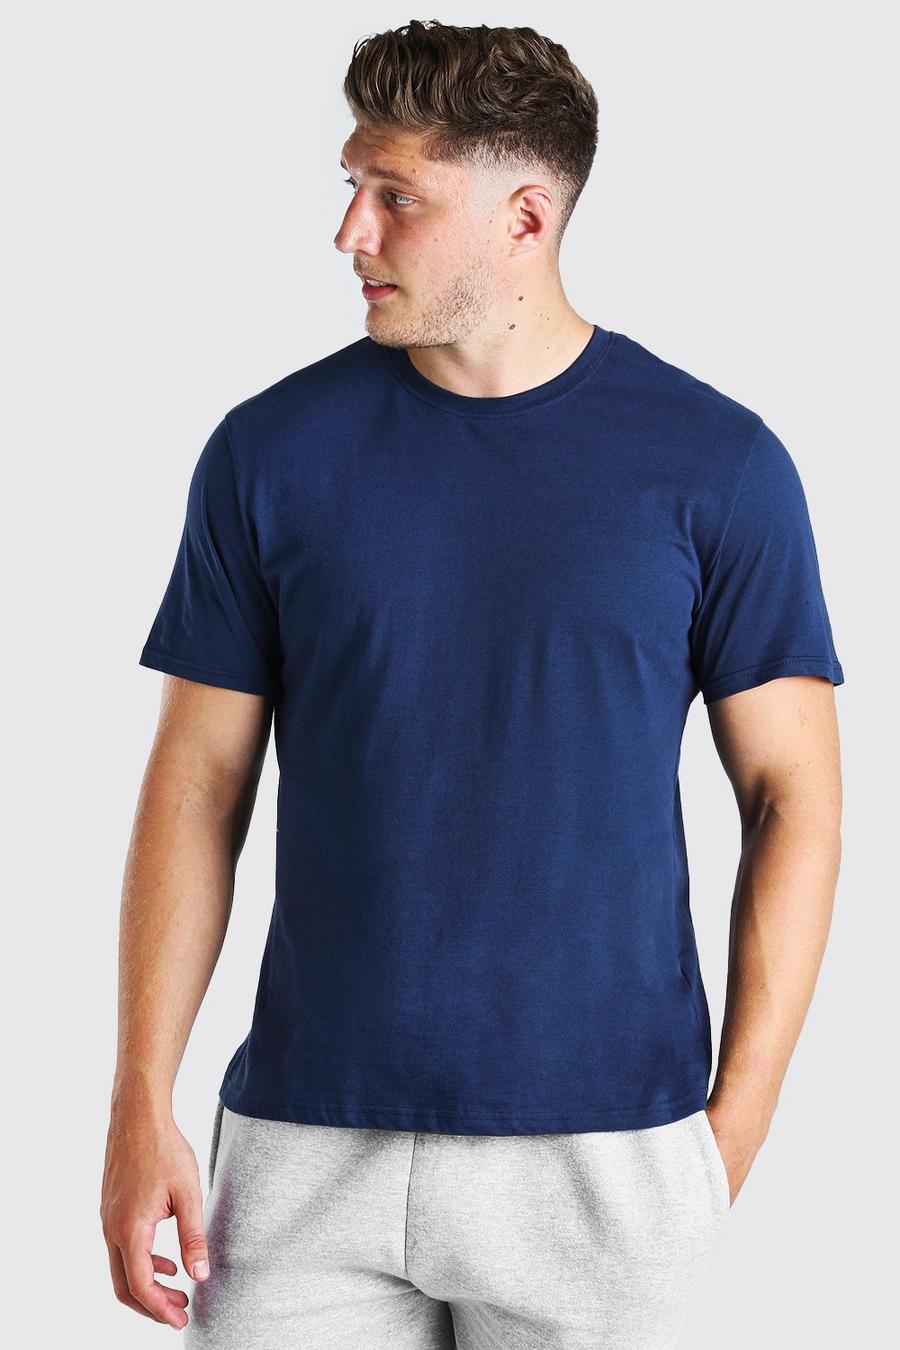 Navy Plus Size Basic T-Shirt image number 1